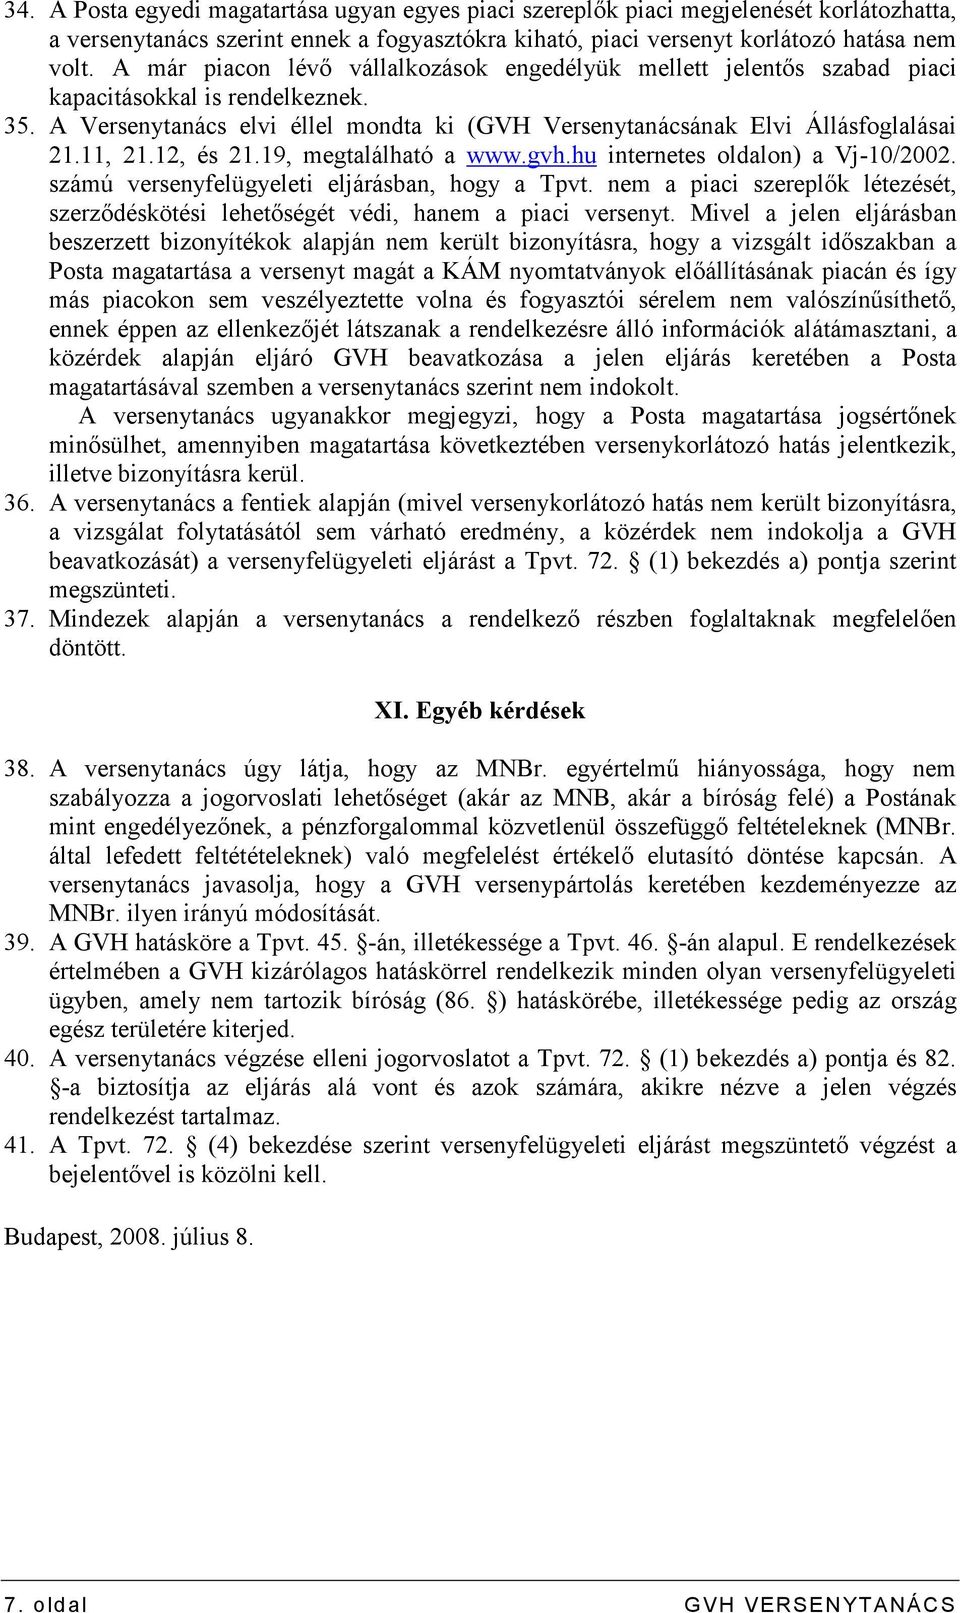 12, és 21.19, megtalálható a www.gvh.hu internetes oldalon) a Vj-10/2002. számú versenyfelügyeleti eljárásban, hogy a Tpvt.